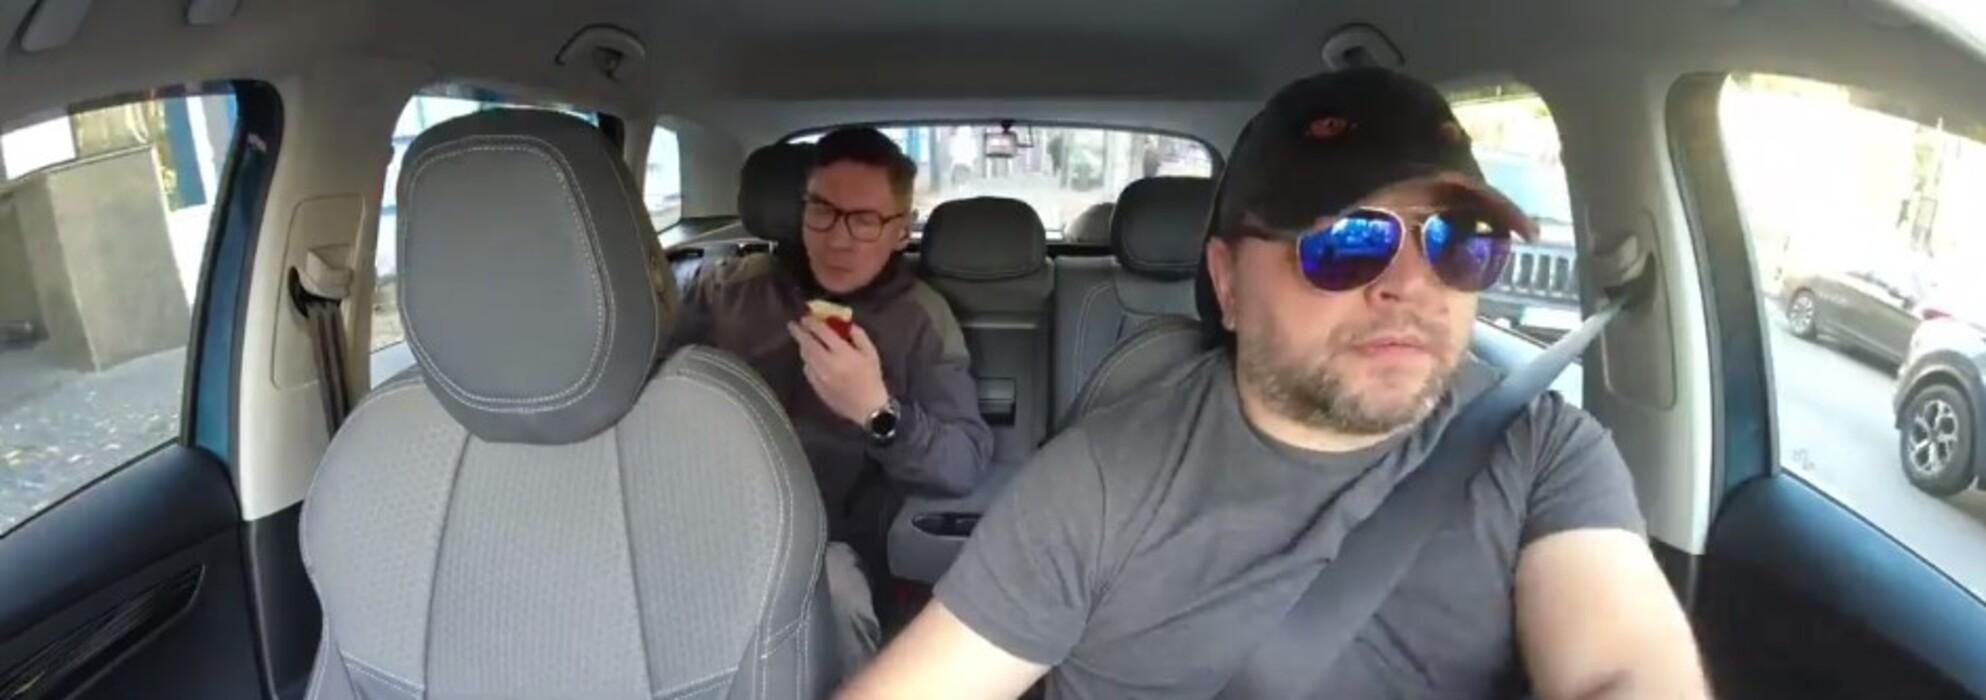 Київський таксист вигнав пасажира з яблуком: у мережі обговорюють гучне відео - Новини Києва - Київ